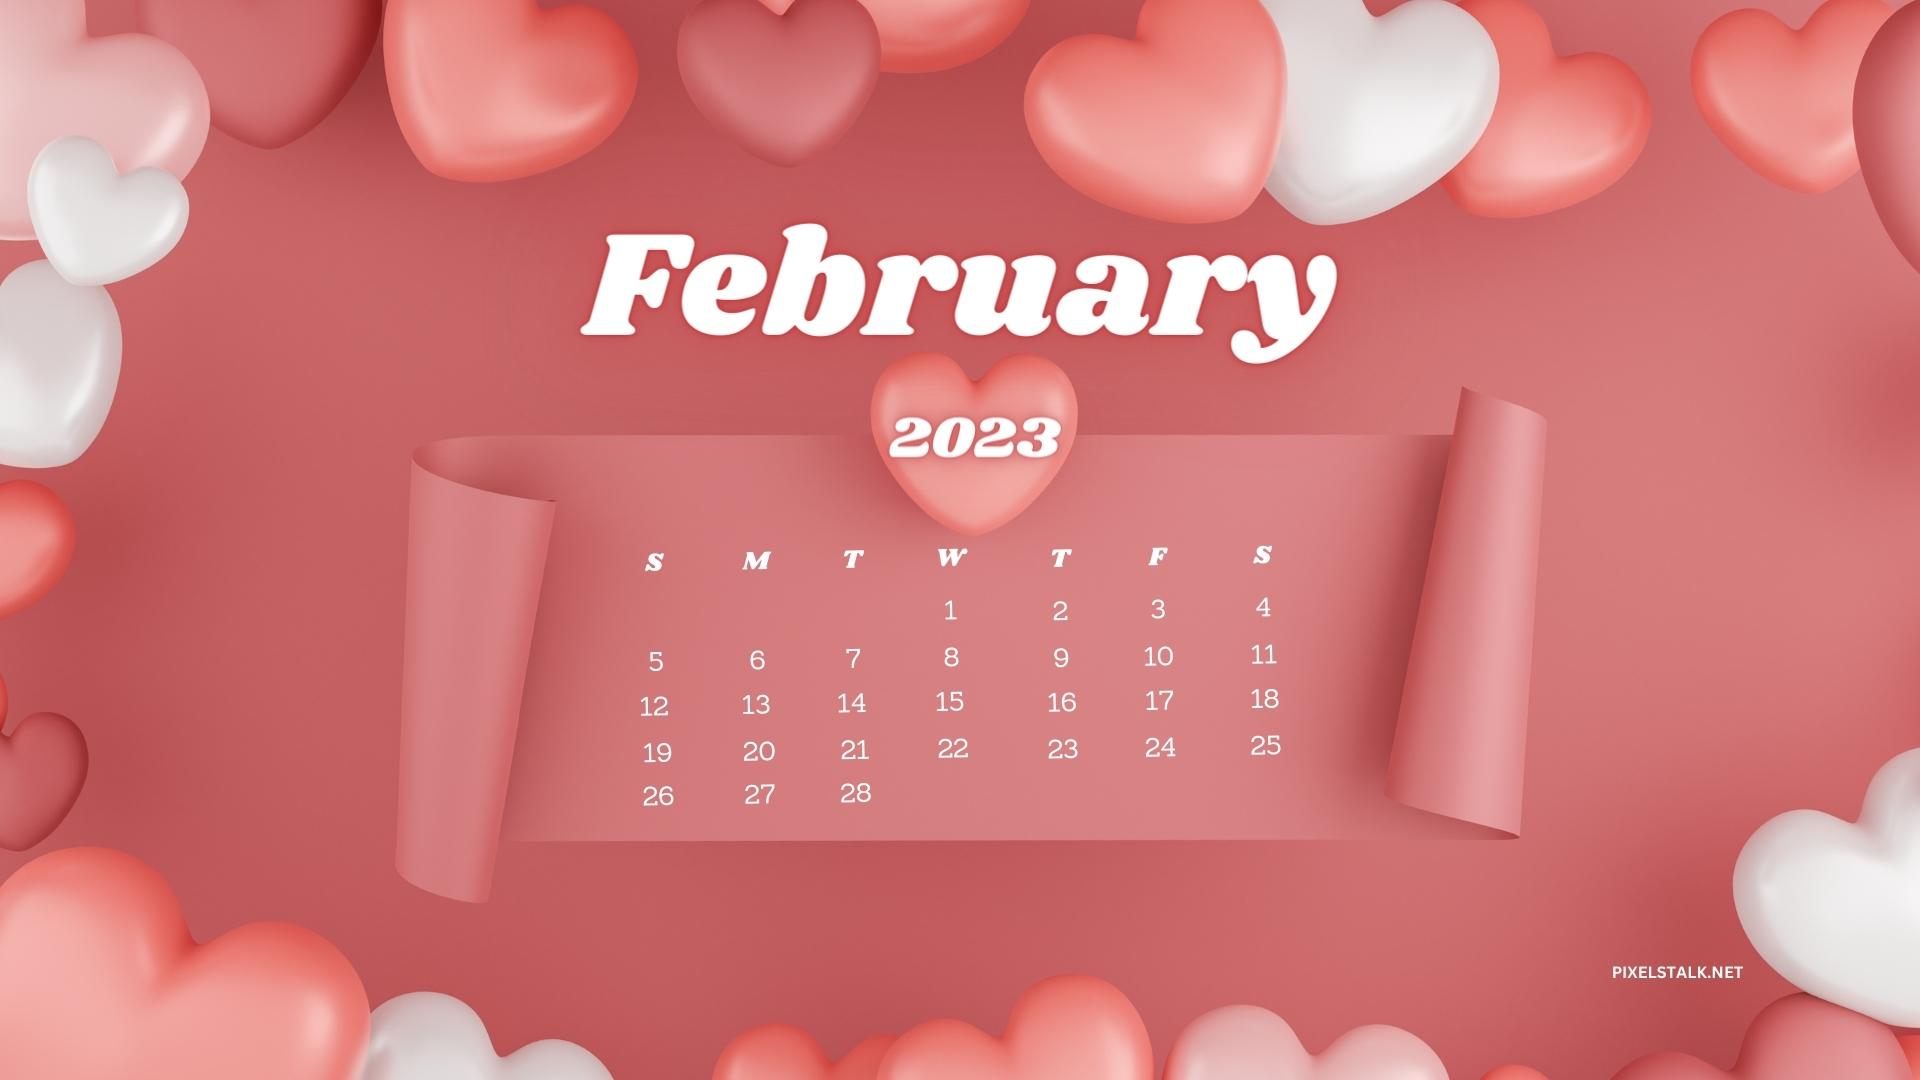 February 2023 Calendar Desktop Wallpapers 